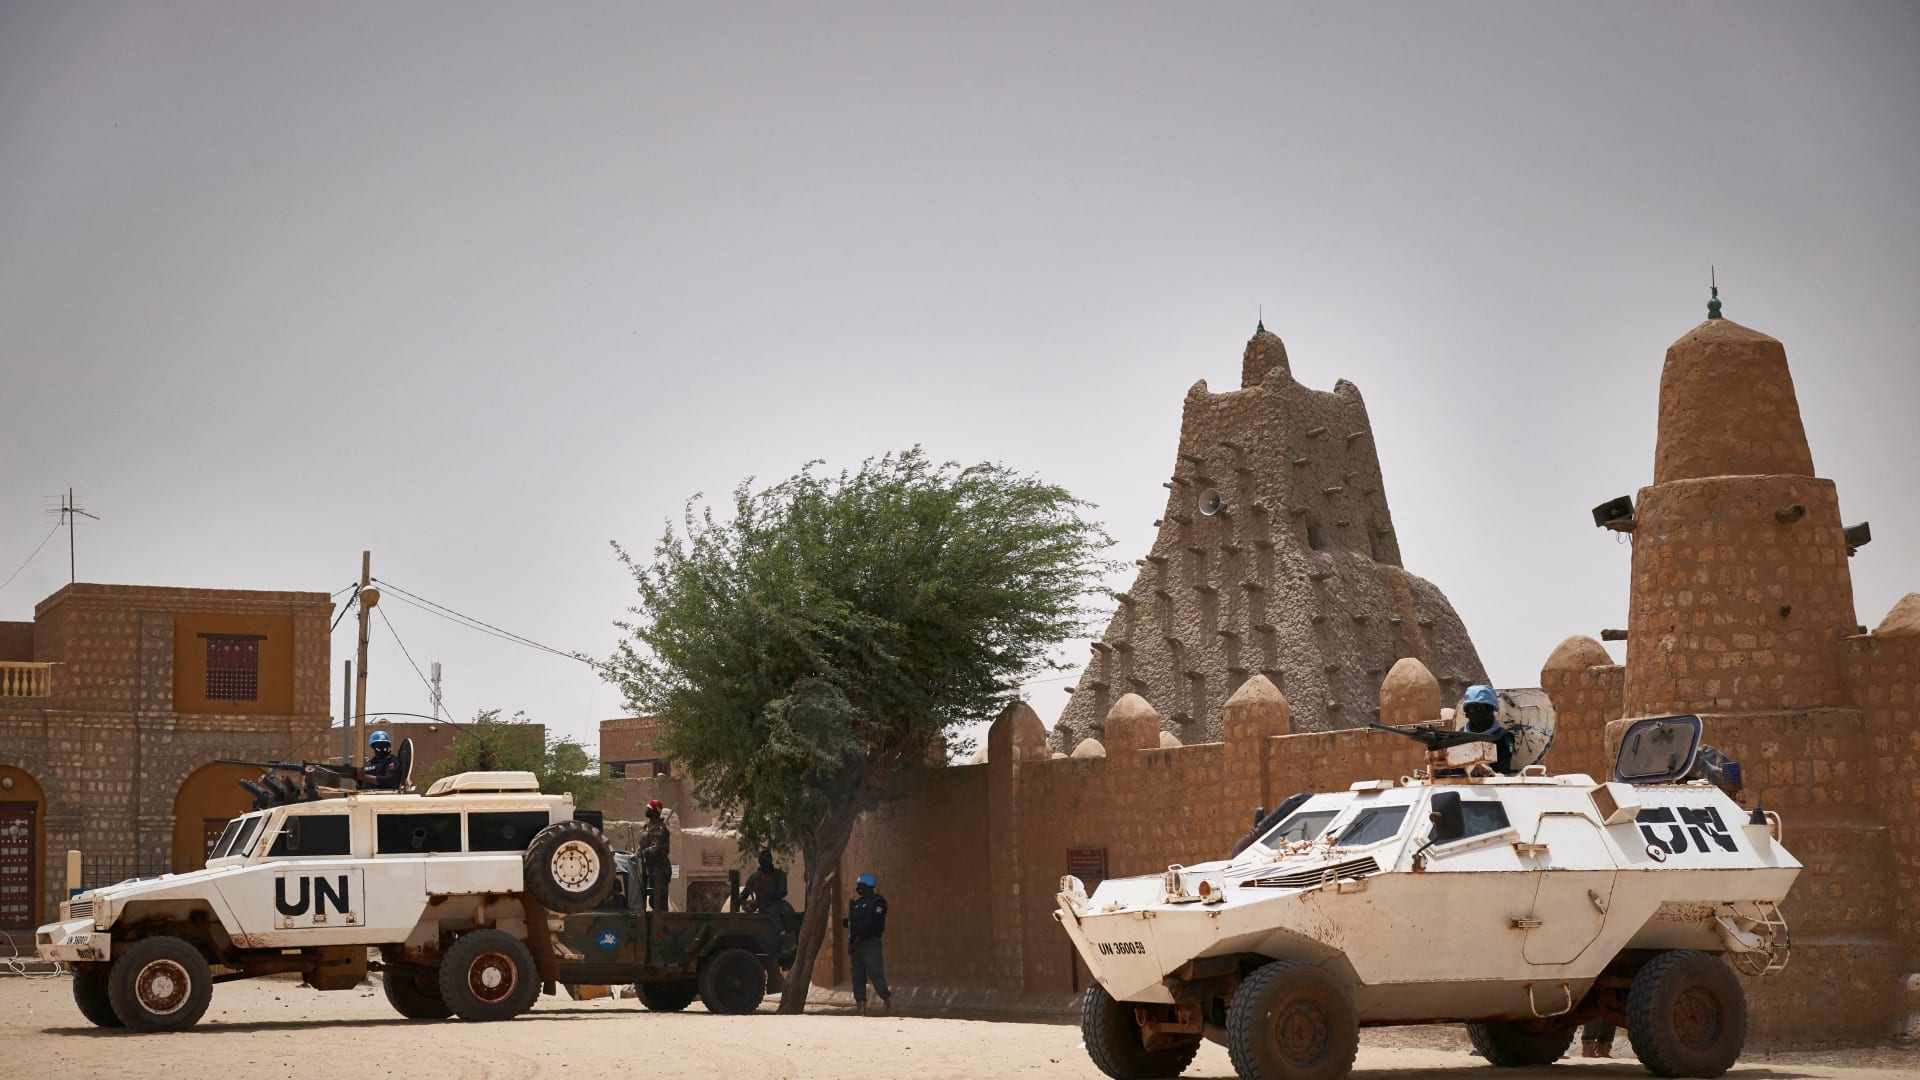 الجيش الأردني يعلن مقتل جندي وإصابة اثنين من قواته لحفظ السلام في هجوم مسلح في مالي